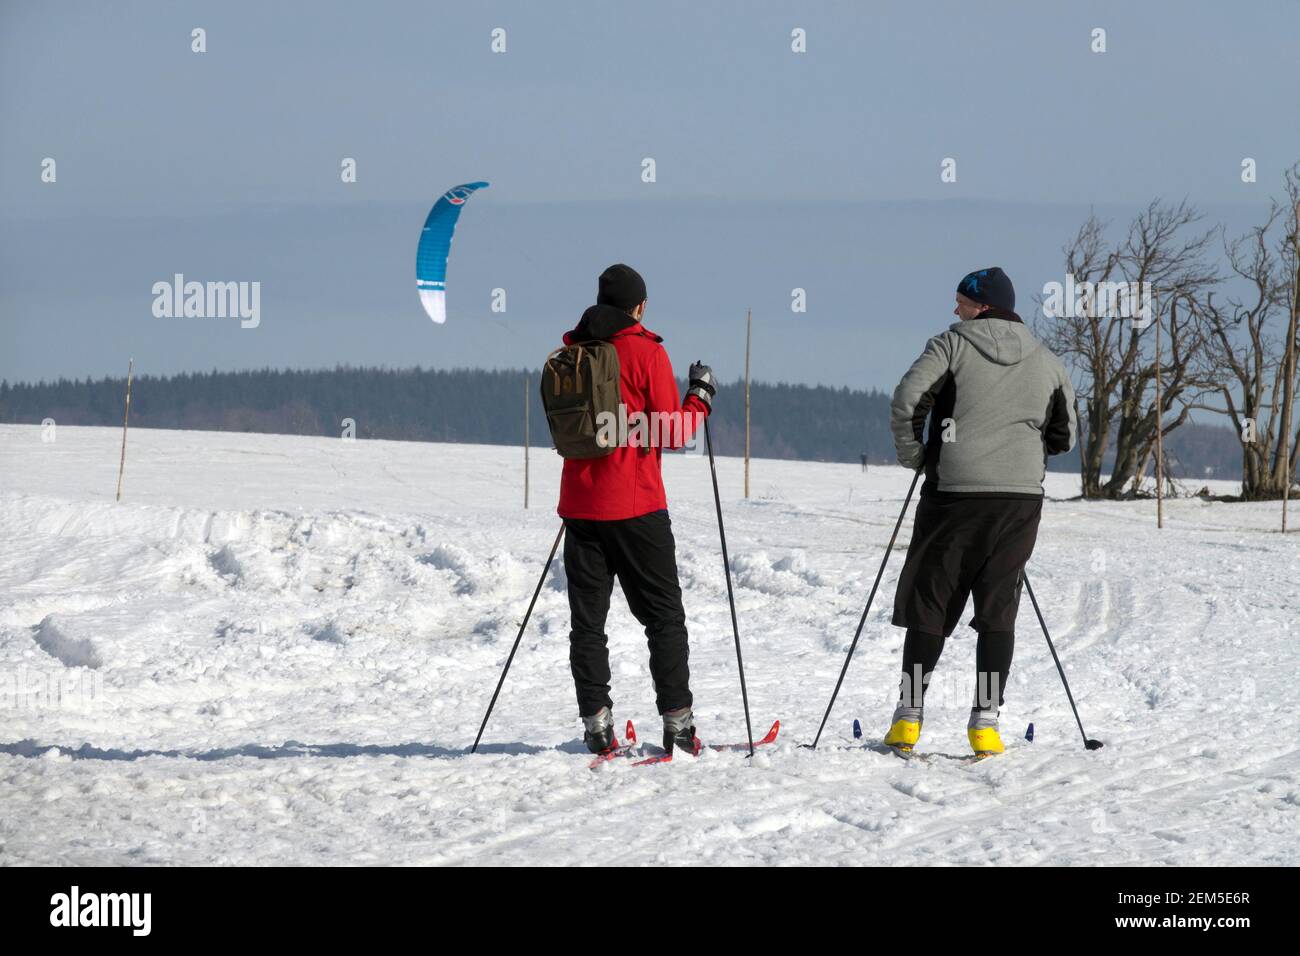 Sports d'hiver style de vie, deux hommes skieurs sur piste de ski de fond dans un paysage enneigé Banque D'Images